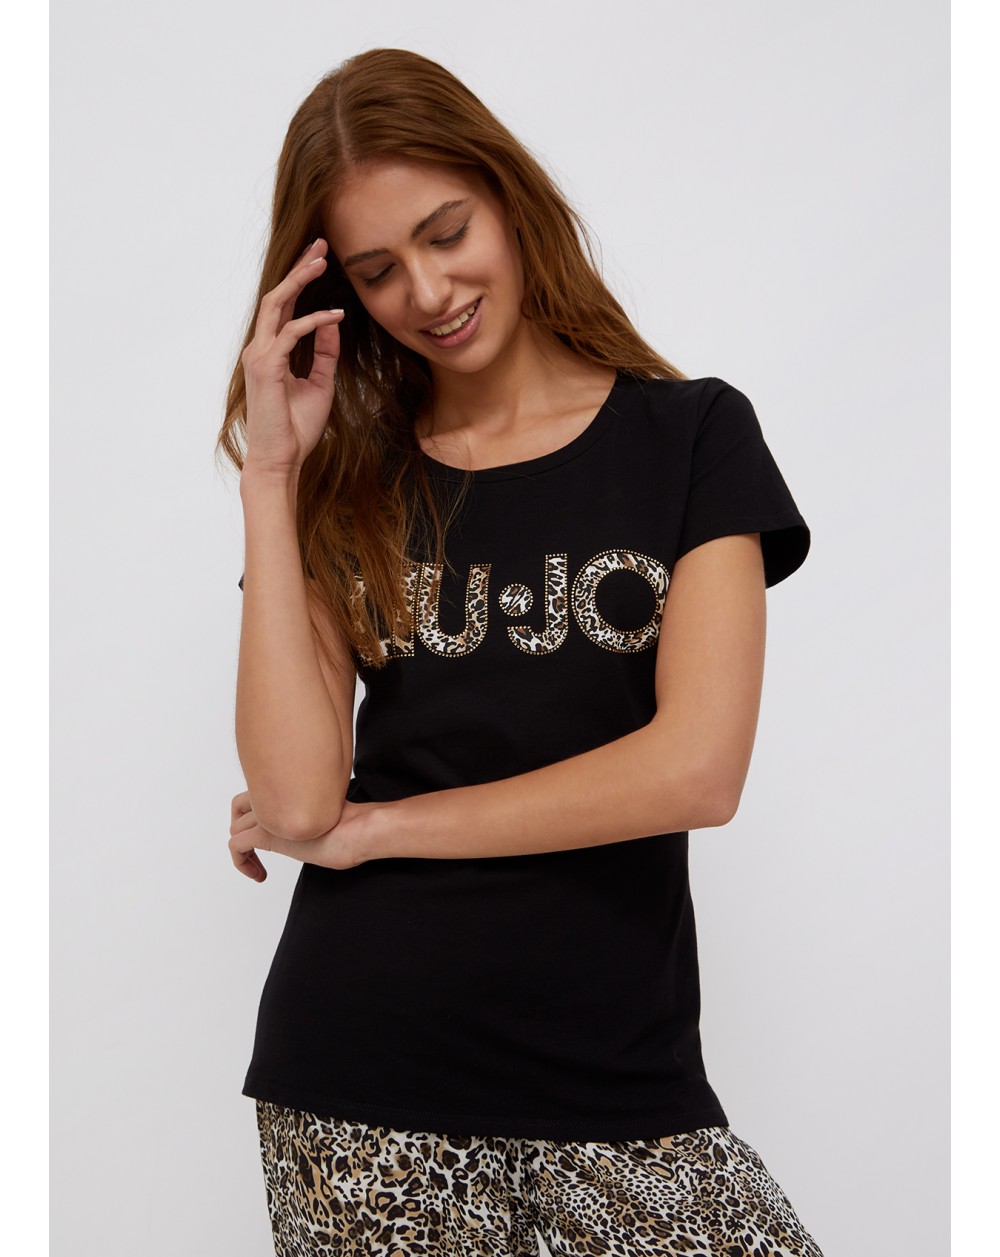 LIU-JO t-shirt donna a maniche corte nera con logo animalier e strass